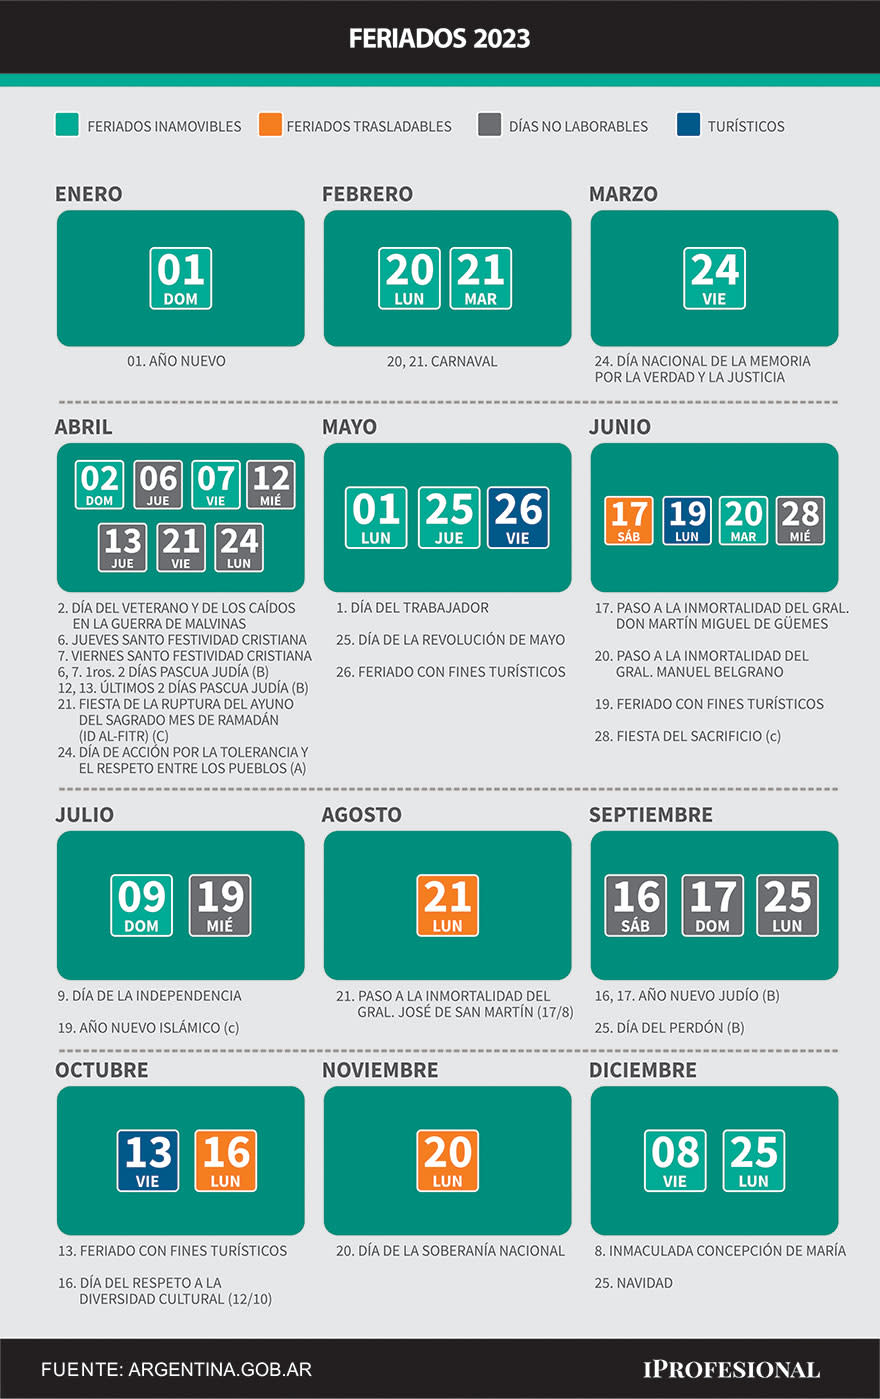 Todos los feriados y días no laborables de 2023, según el calendario oficial del Ministerio del Interior de la Nación